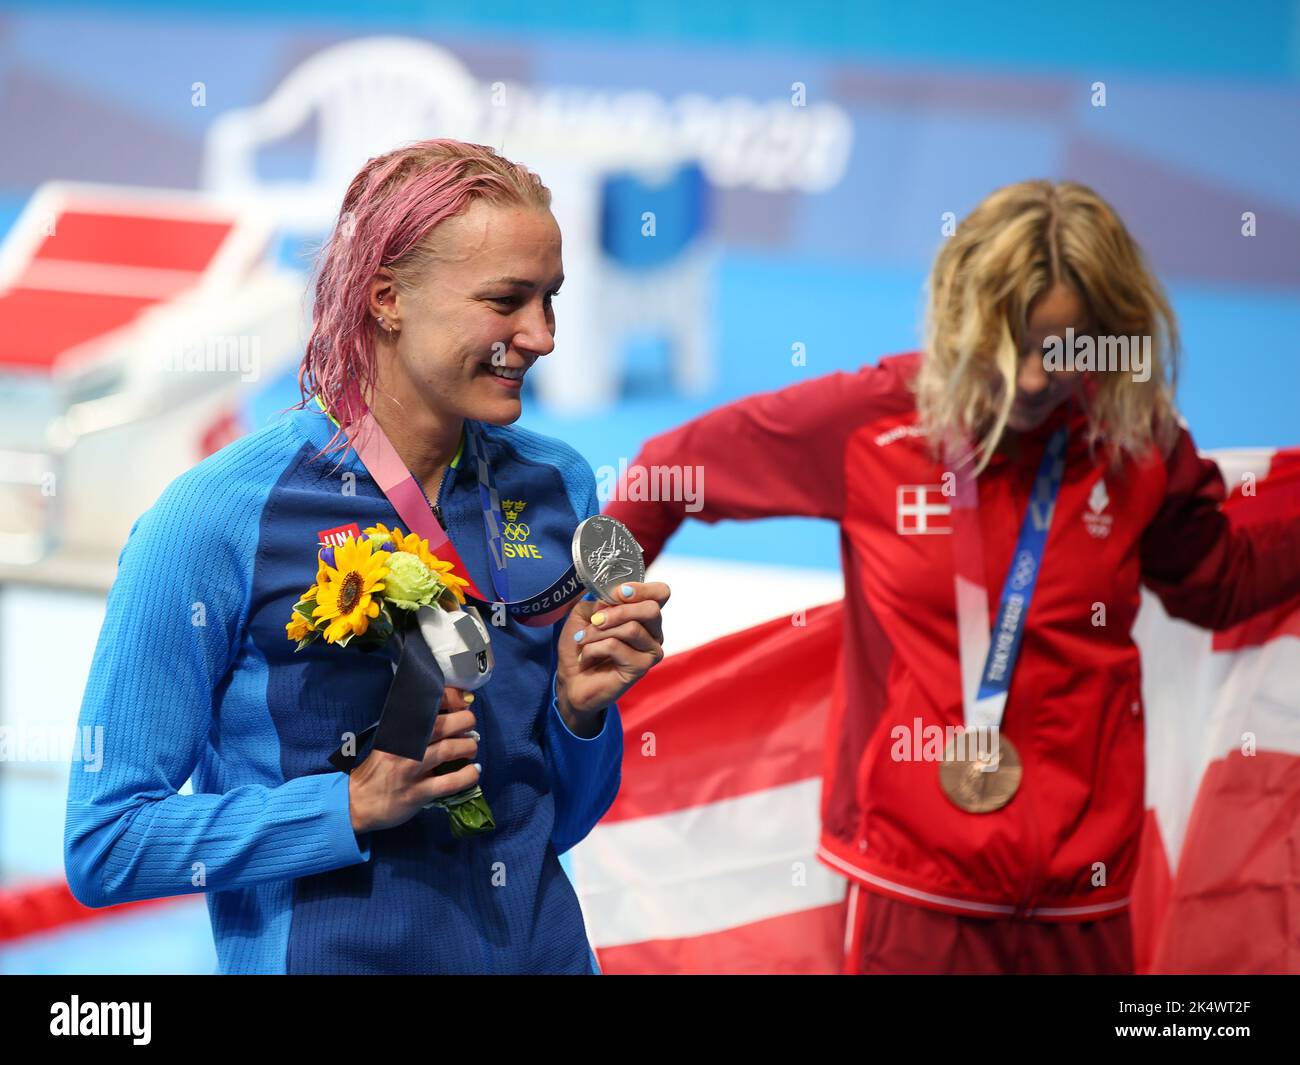 1st AGOSTO 2021 - TOKYO, GIAPPONE: Sarah SJOSTROM di Svezia vince la medaglia d'argento nella finale di Freestyle 50m delle Donne in piscina ai Giochi Olimpici di Tokyo 2020 (Foto: Mickael Chavet/RX) Foto Stock